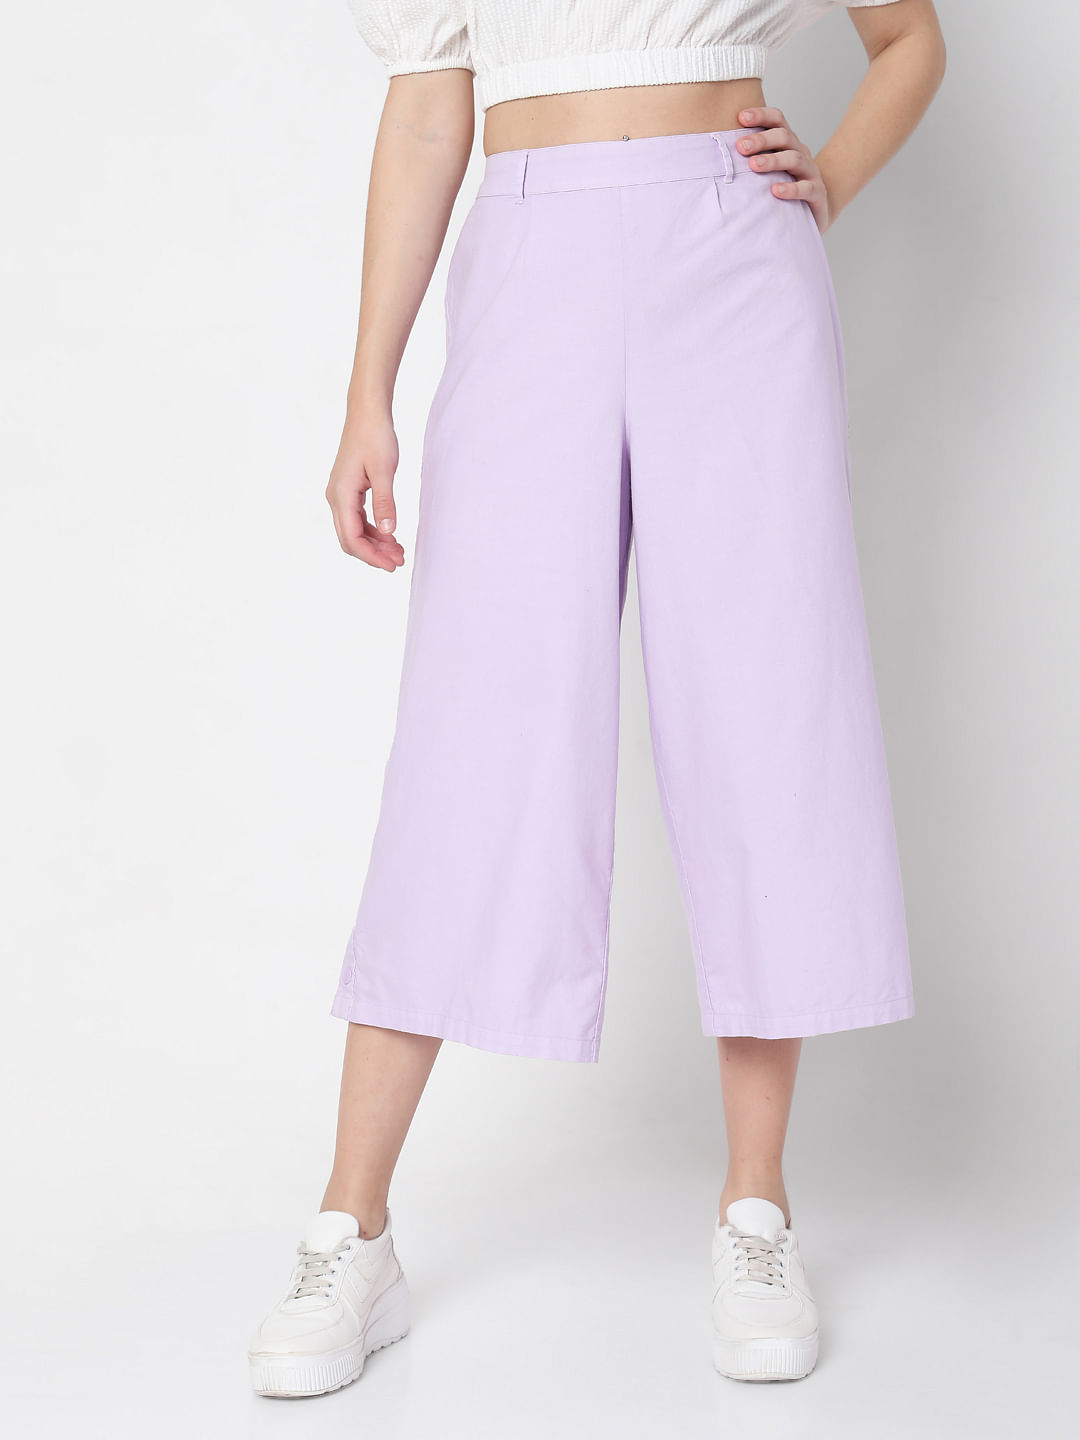 Buy Purple Trousers  Pants for Women by KOTTY Online  Ajiocom